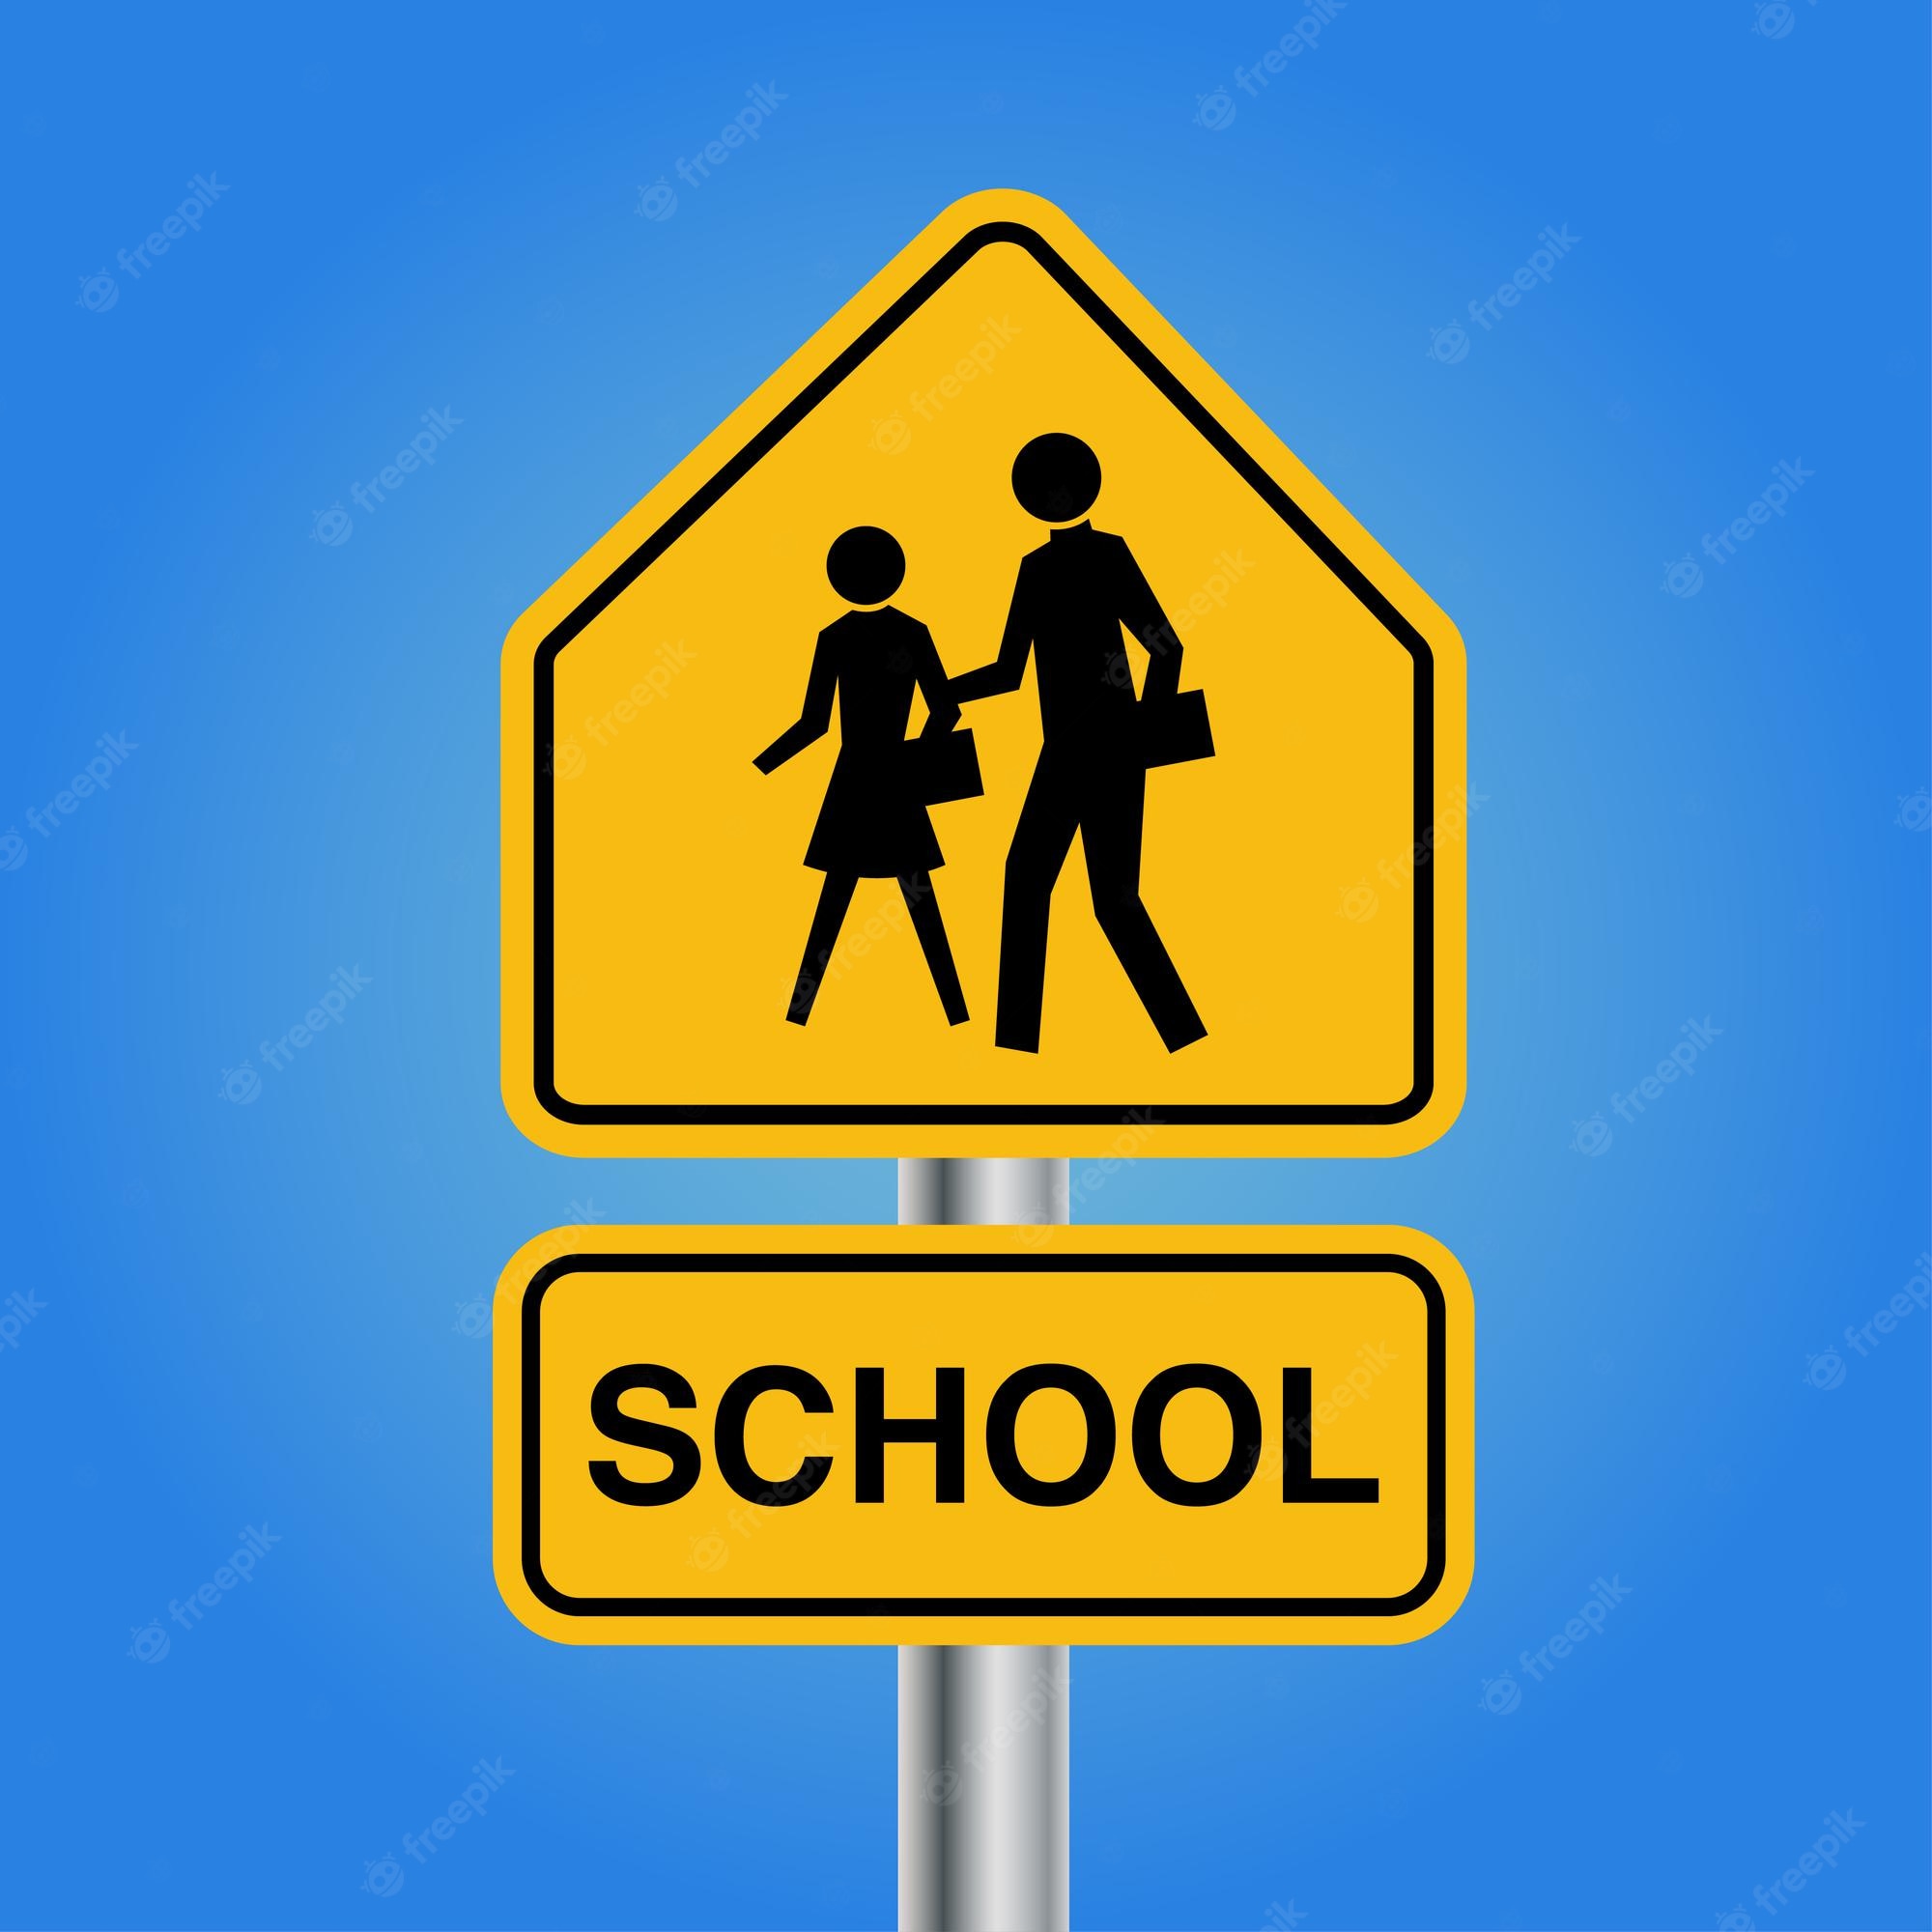 Importancia y características del letrero de cruce escolar-Cuál es el diseño y significado del letrero de cruce escolar